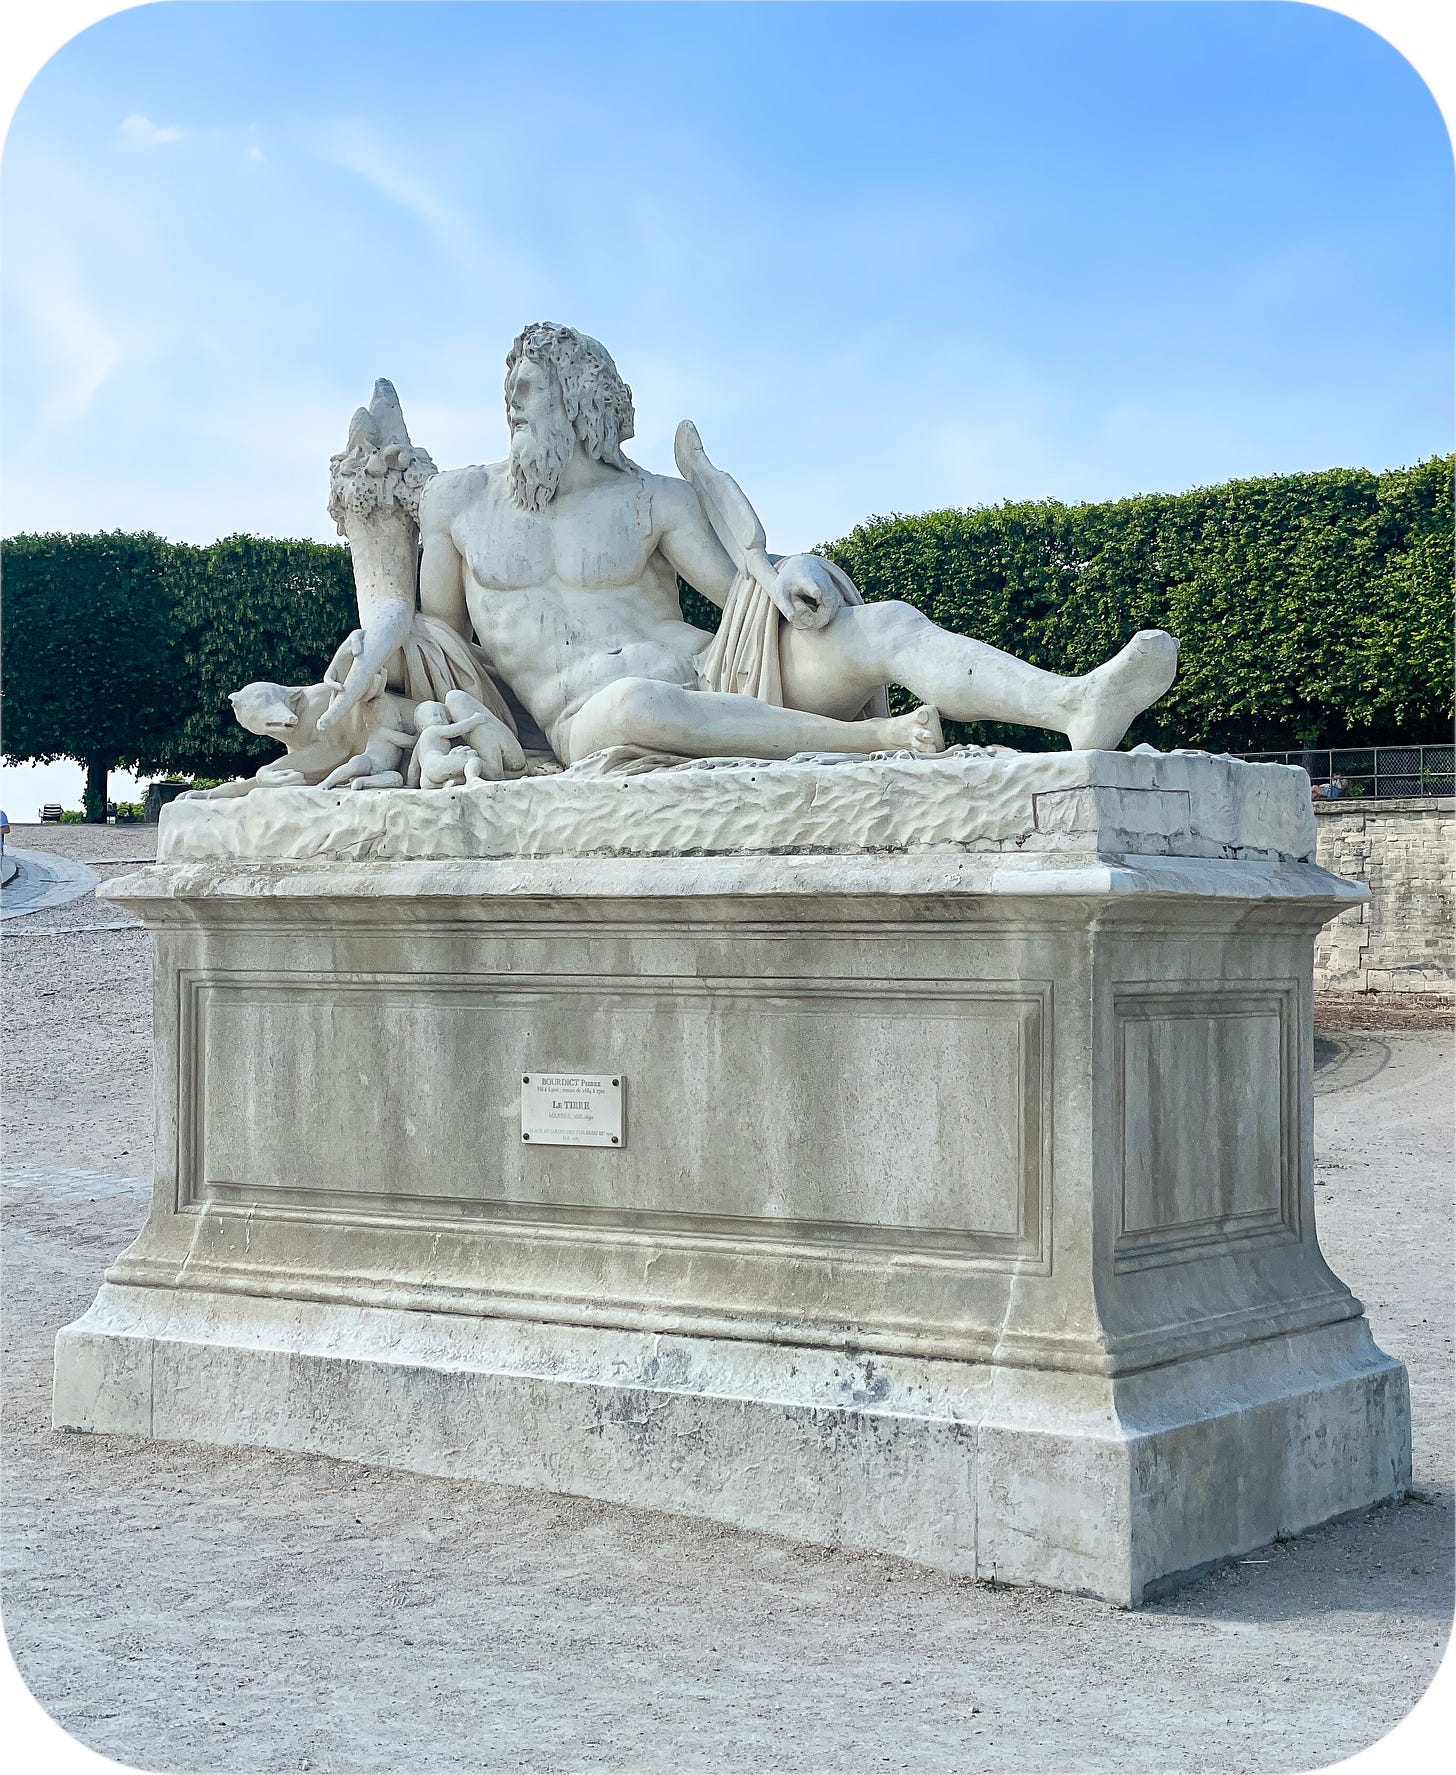 Sculpture in the Tuileries Garden, Paris